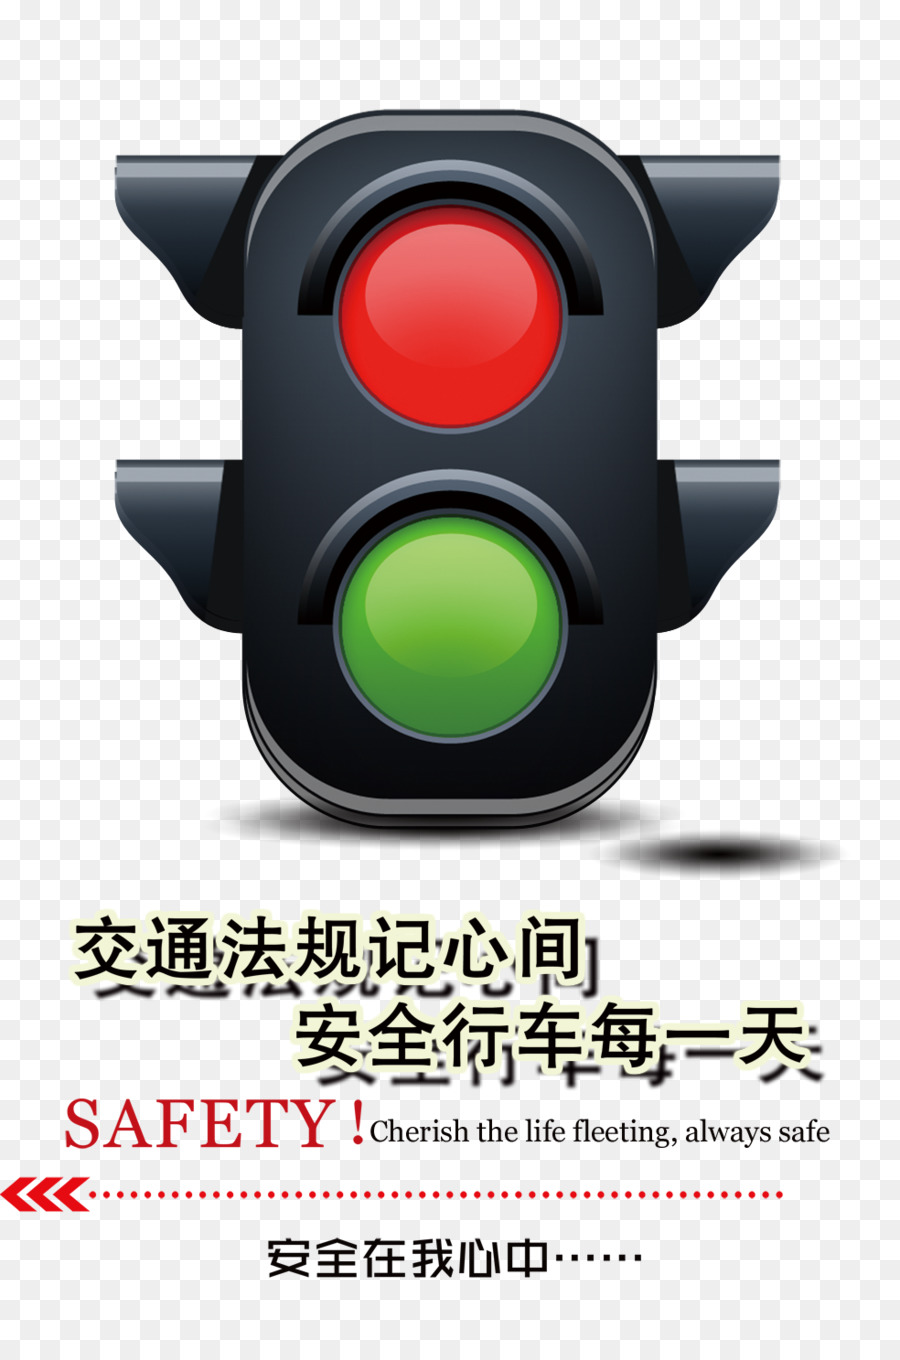 Semaforo Icona di Download - di guida sicura, la sicurezza del traffico